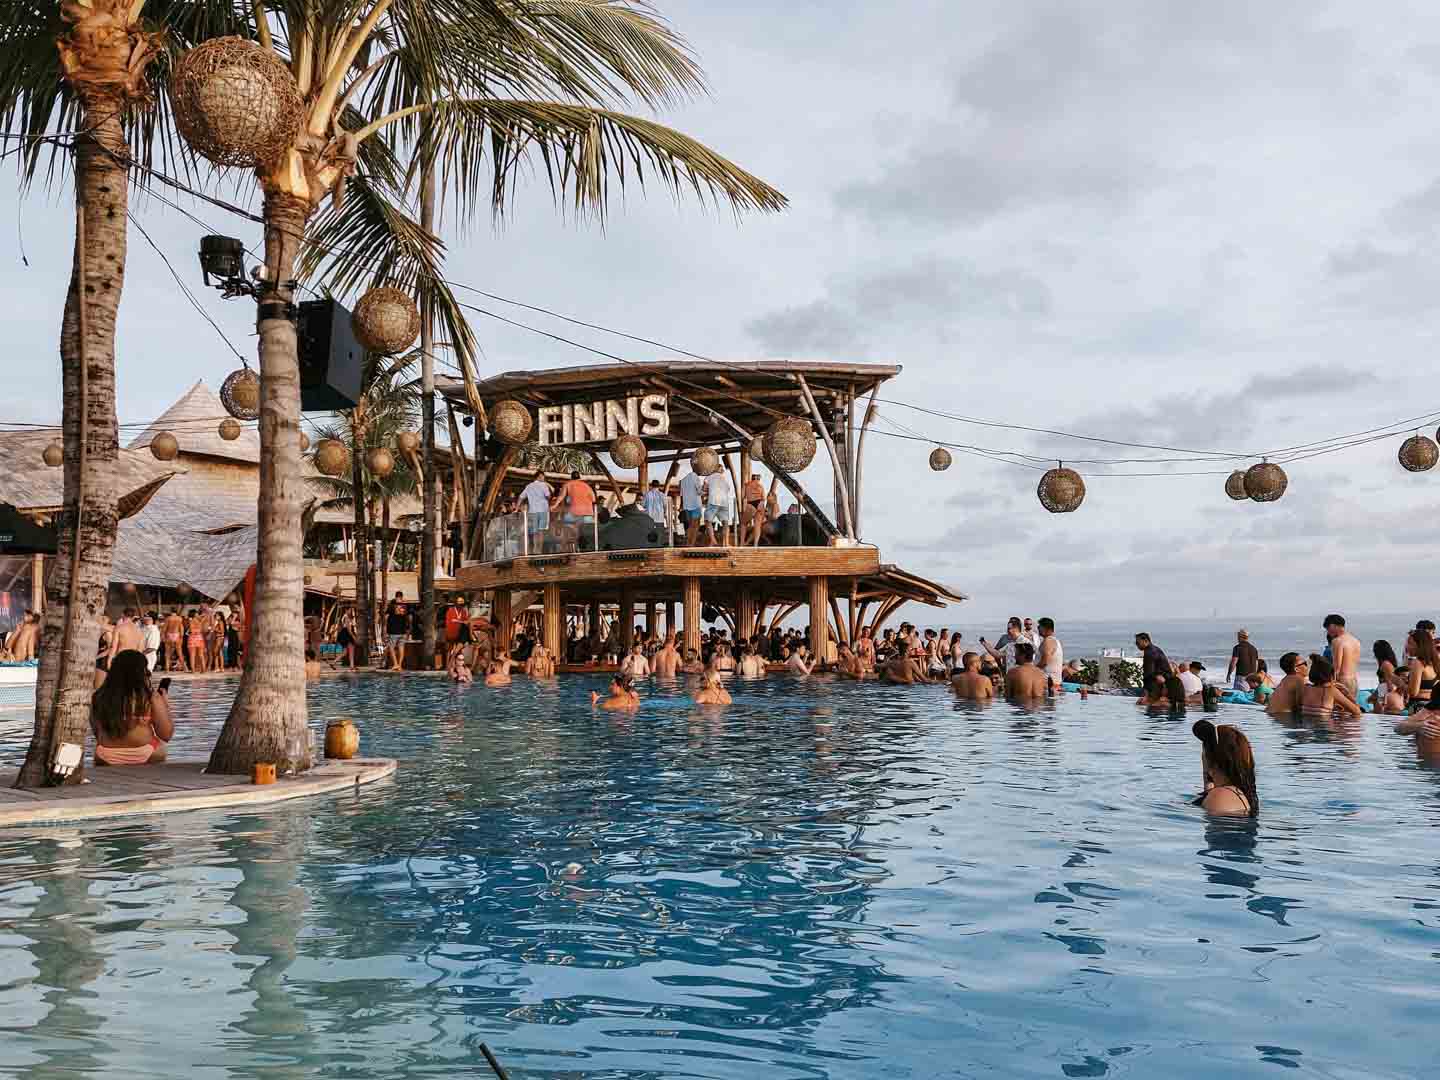 Finn's Beach Club in Bali